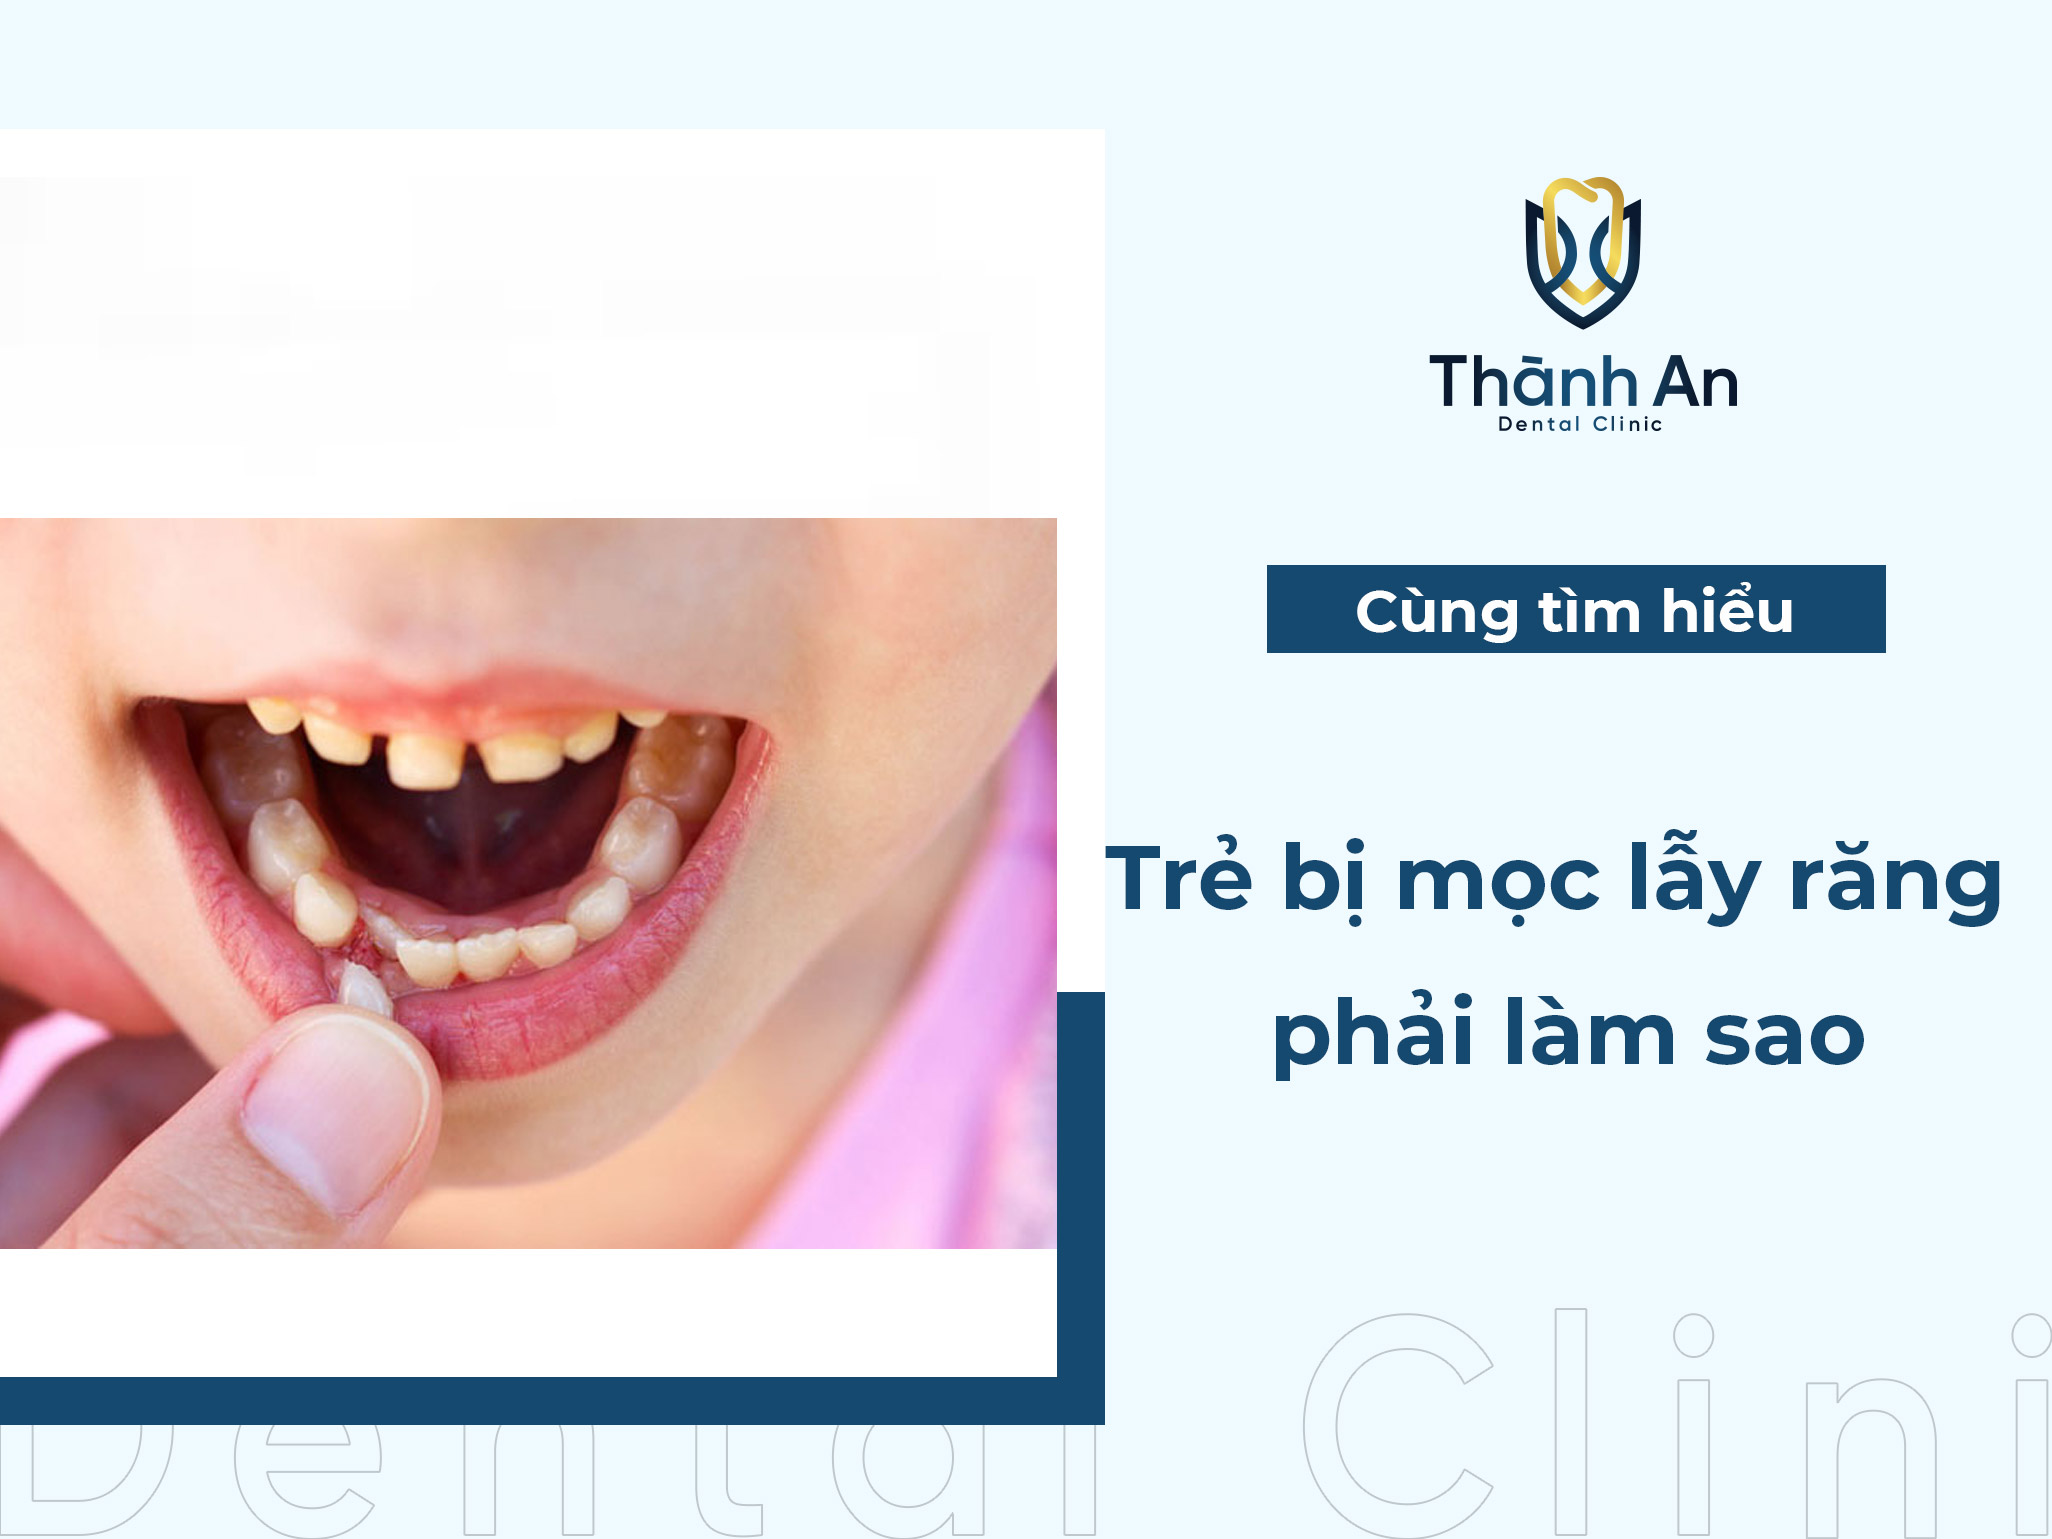 Răng mọc lẫy ở trẻ - Giải pháp nào an toàn và hiệu quả?